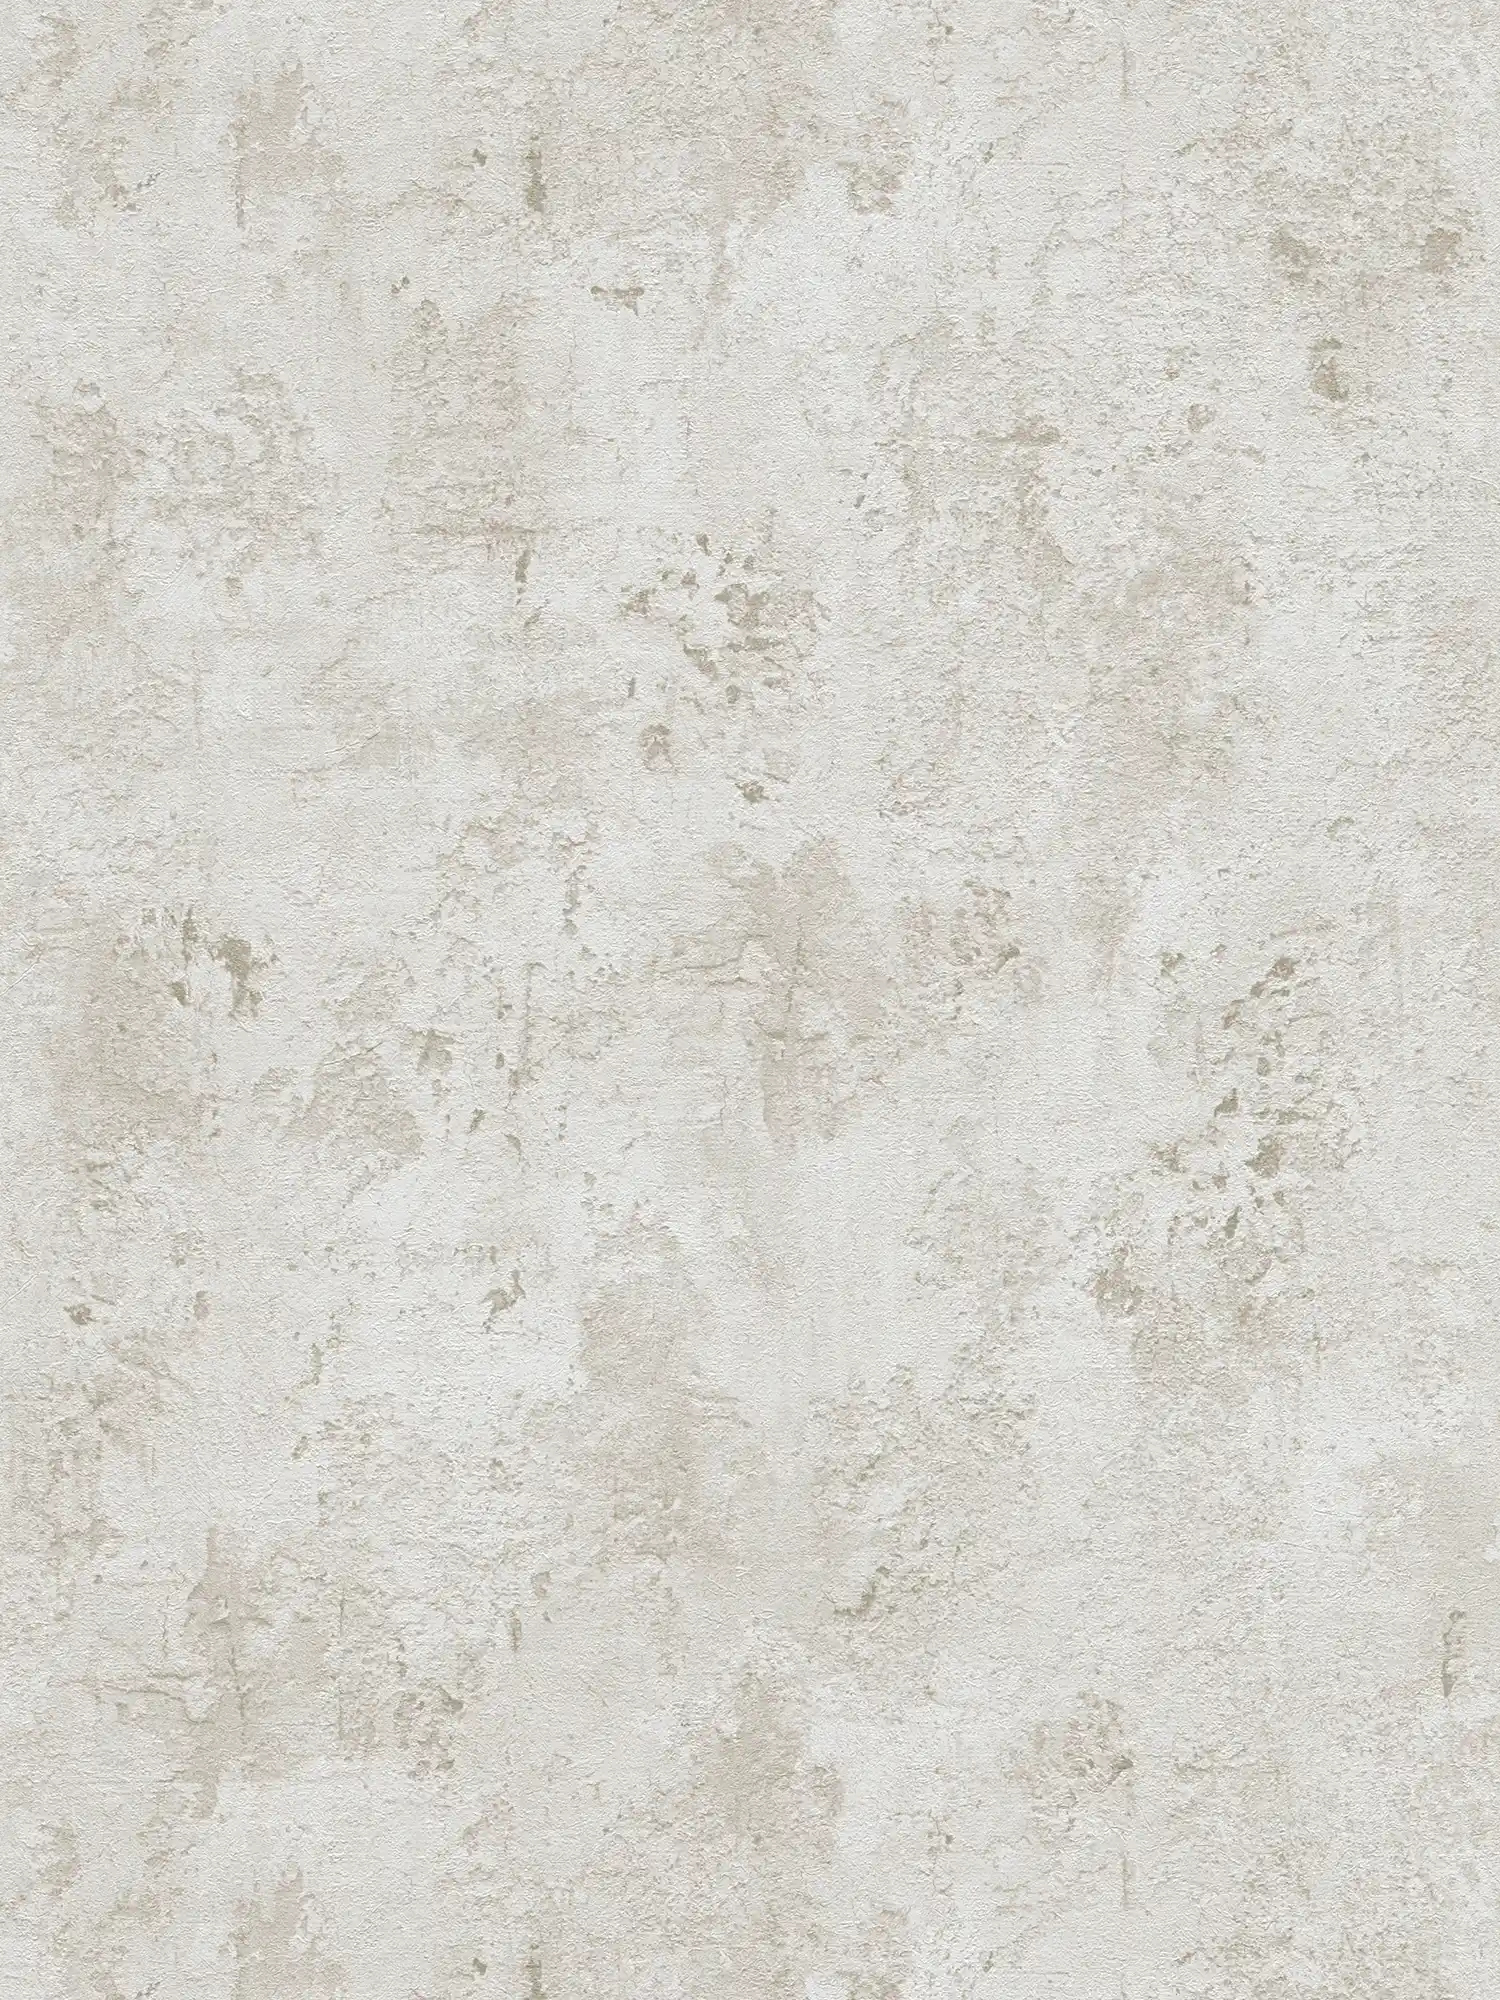 Gipsachtig behang met structuurpatroon - grijs, beige
